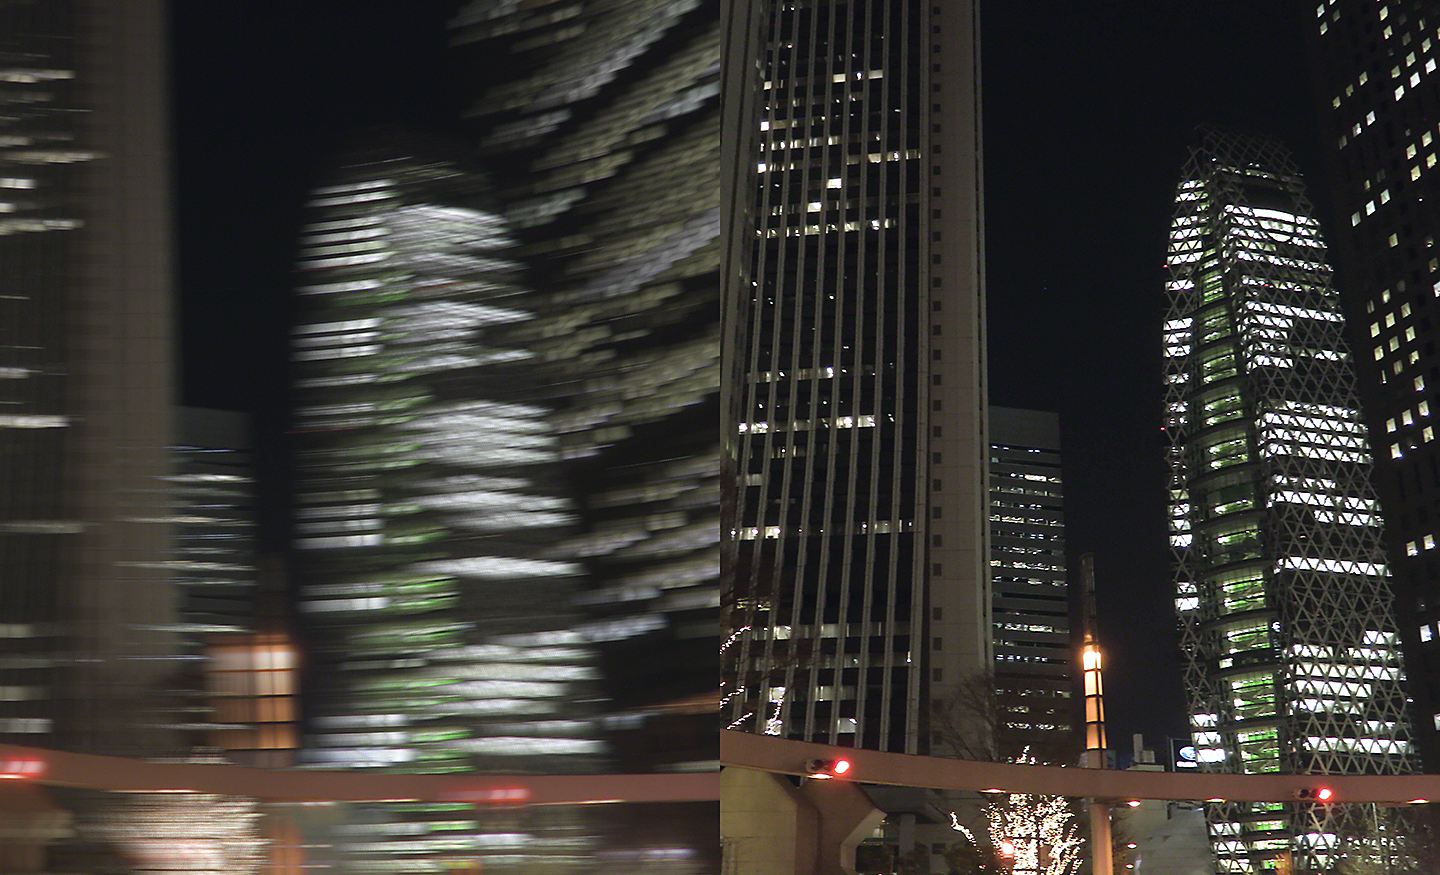 To bilder av bybildet om natten, det ene uskarpt, det andre i skarpt fokus.